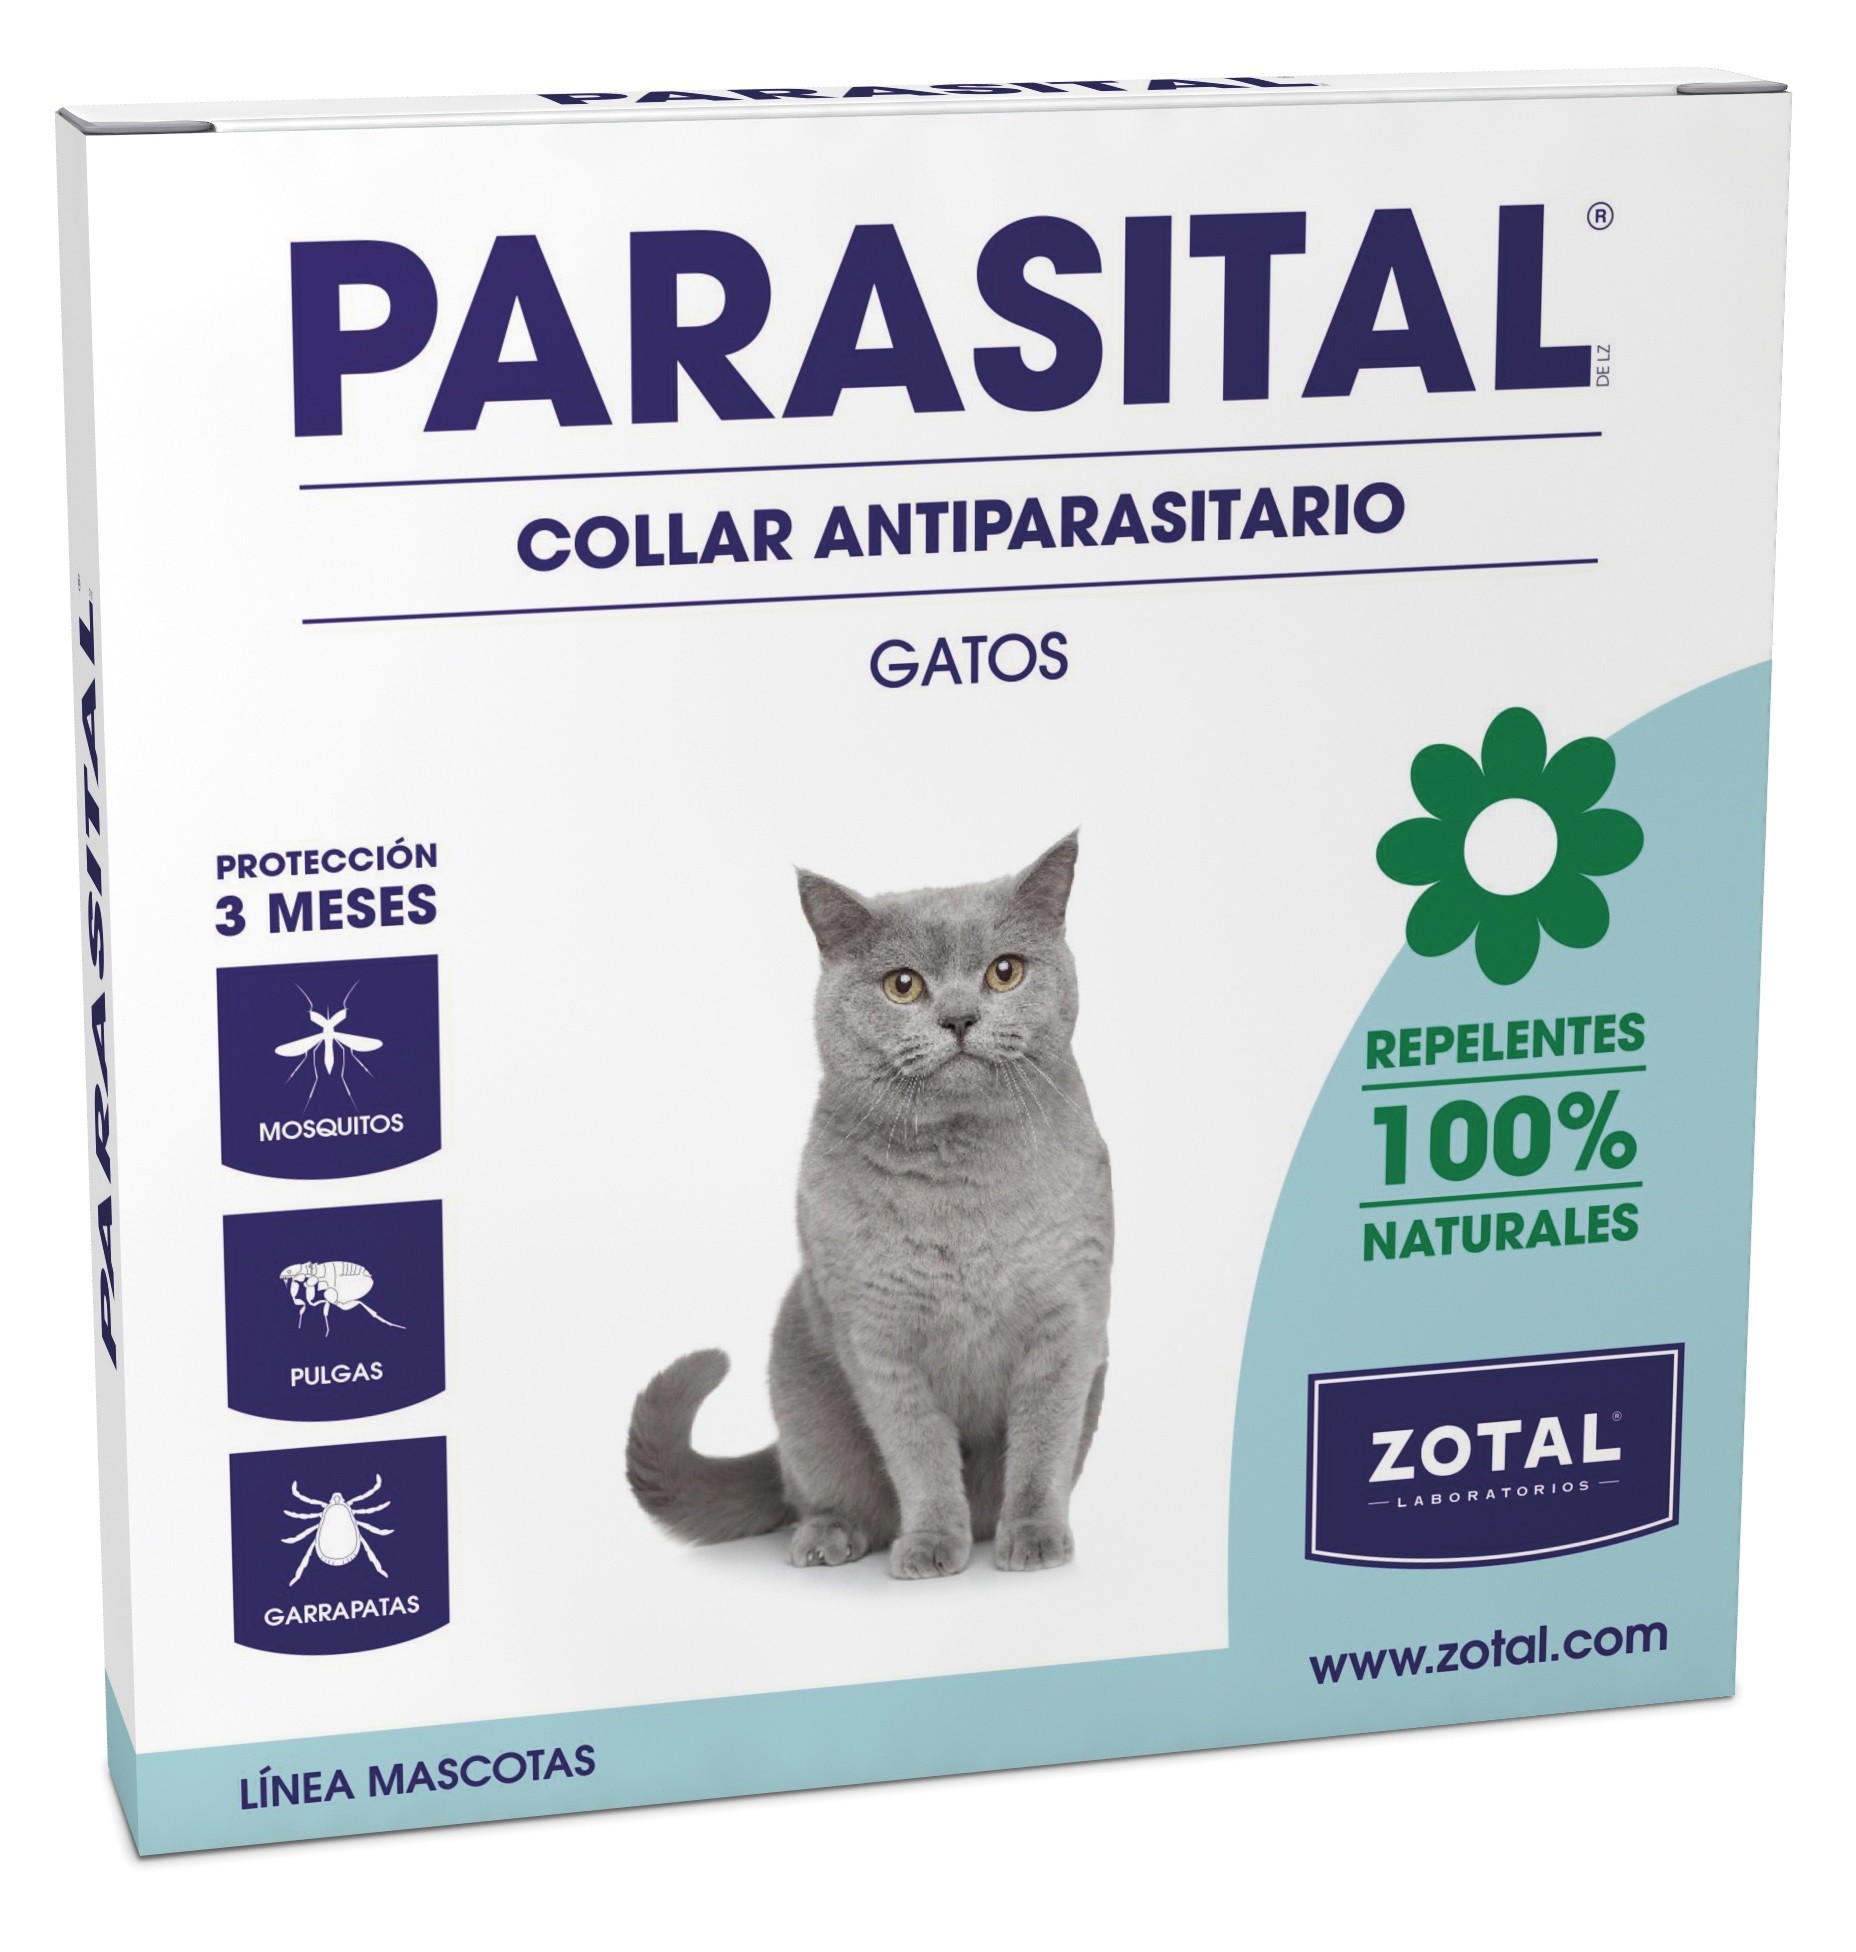 Aguanieve A bordo Conclusión PARASITAL COLLAR REPELENTE GATO Collar Antiparasitario Gatos